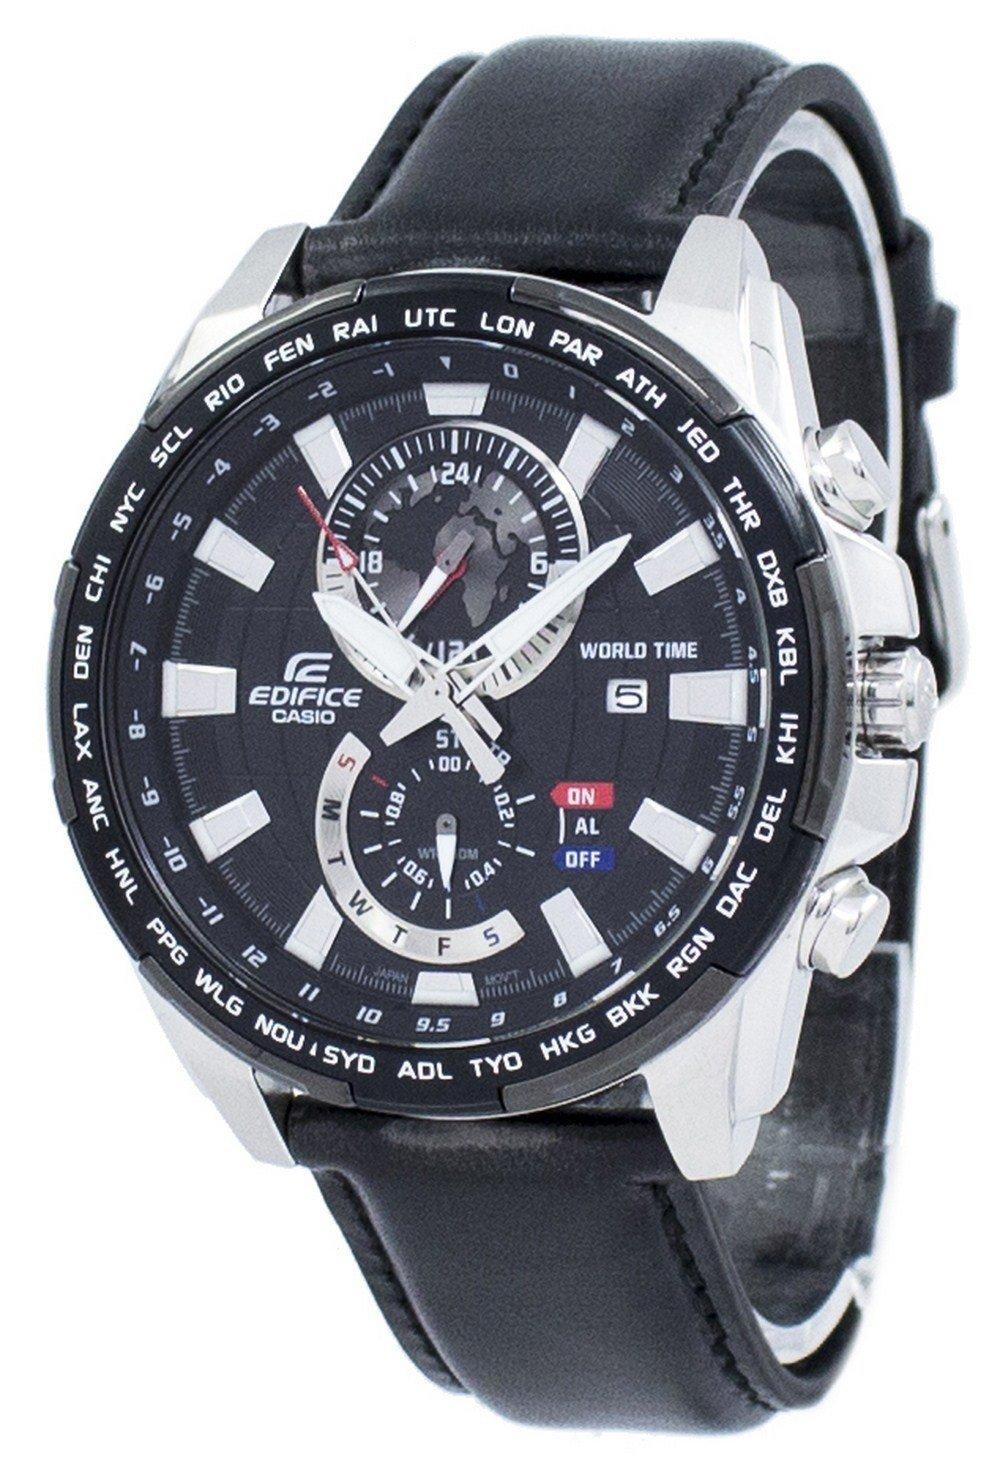 Casio Edifice World Time Quartz EFR-550L-1AV EFR550L-1AV Men's Watch